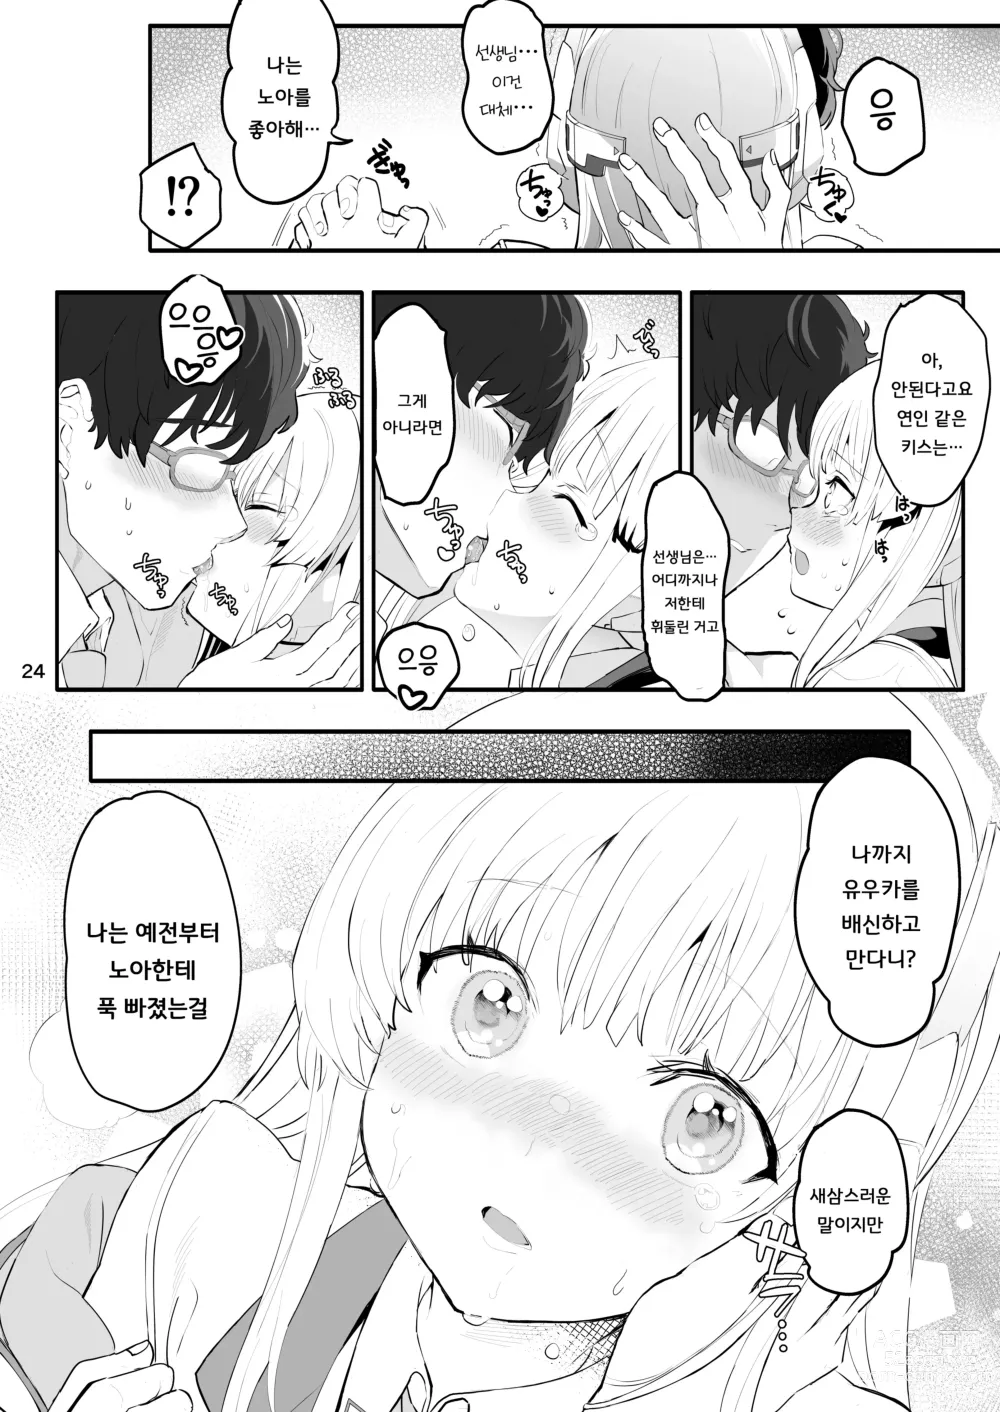 Page 24 of doujinshi 세미나  서기의 비밀스러운 교제일기